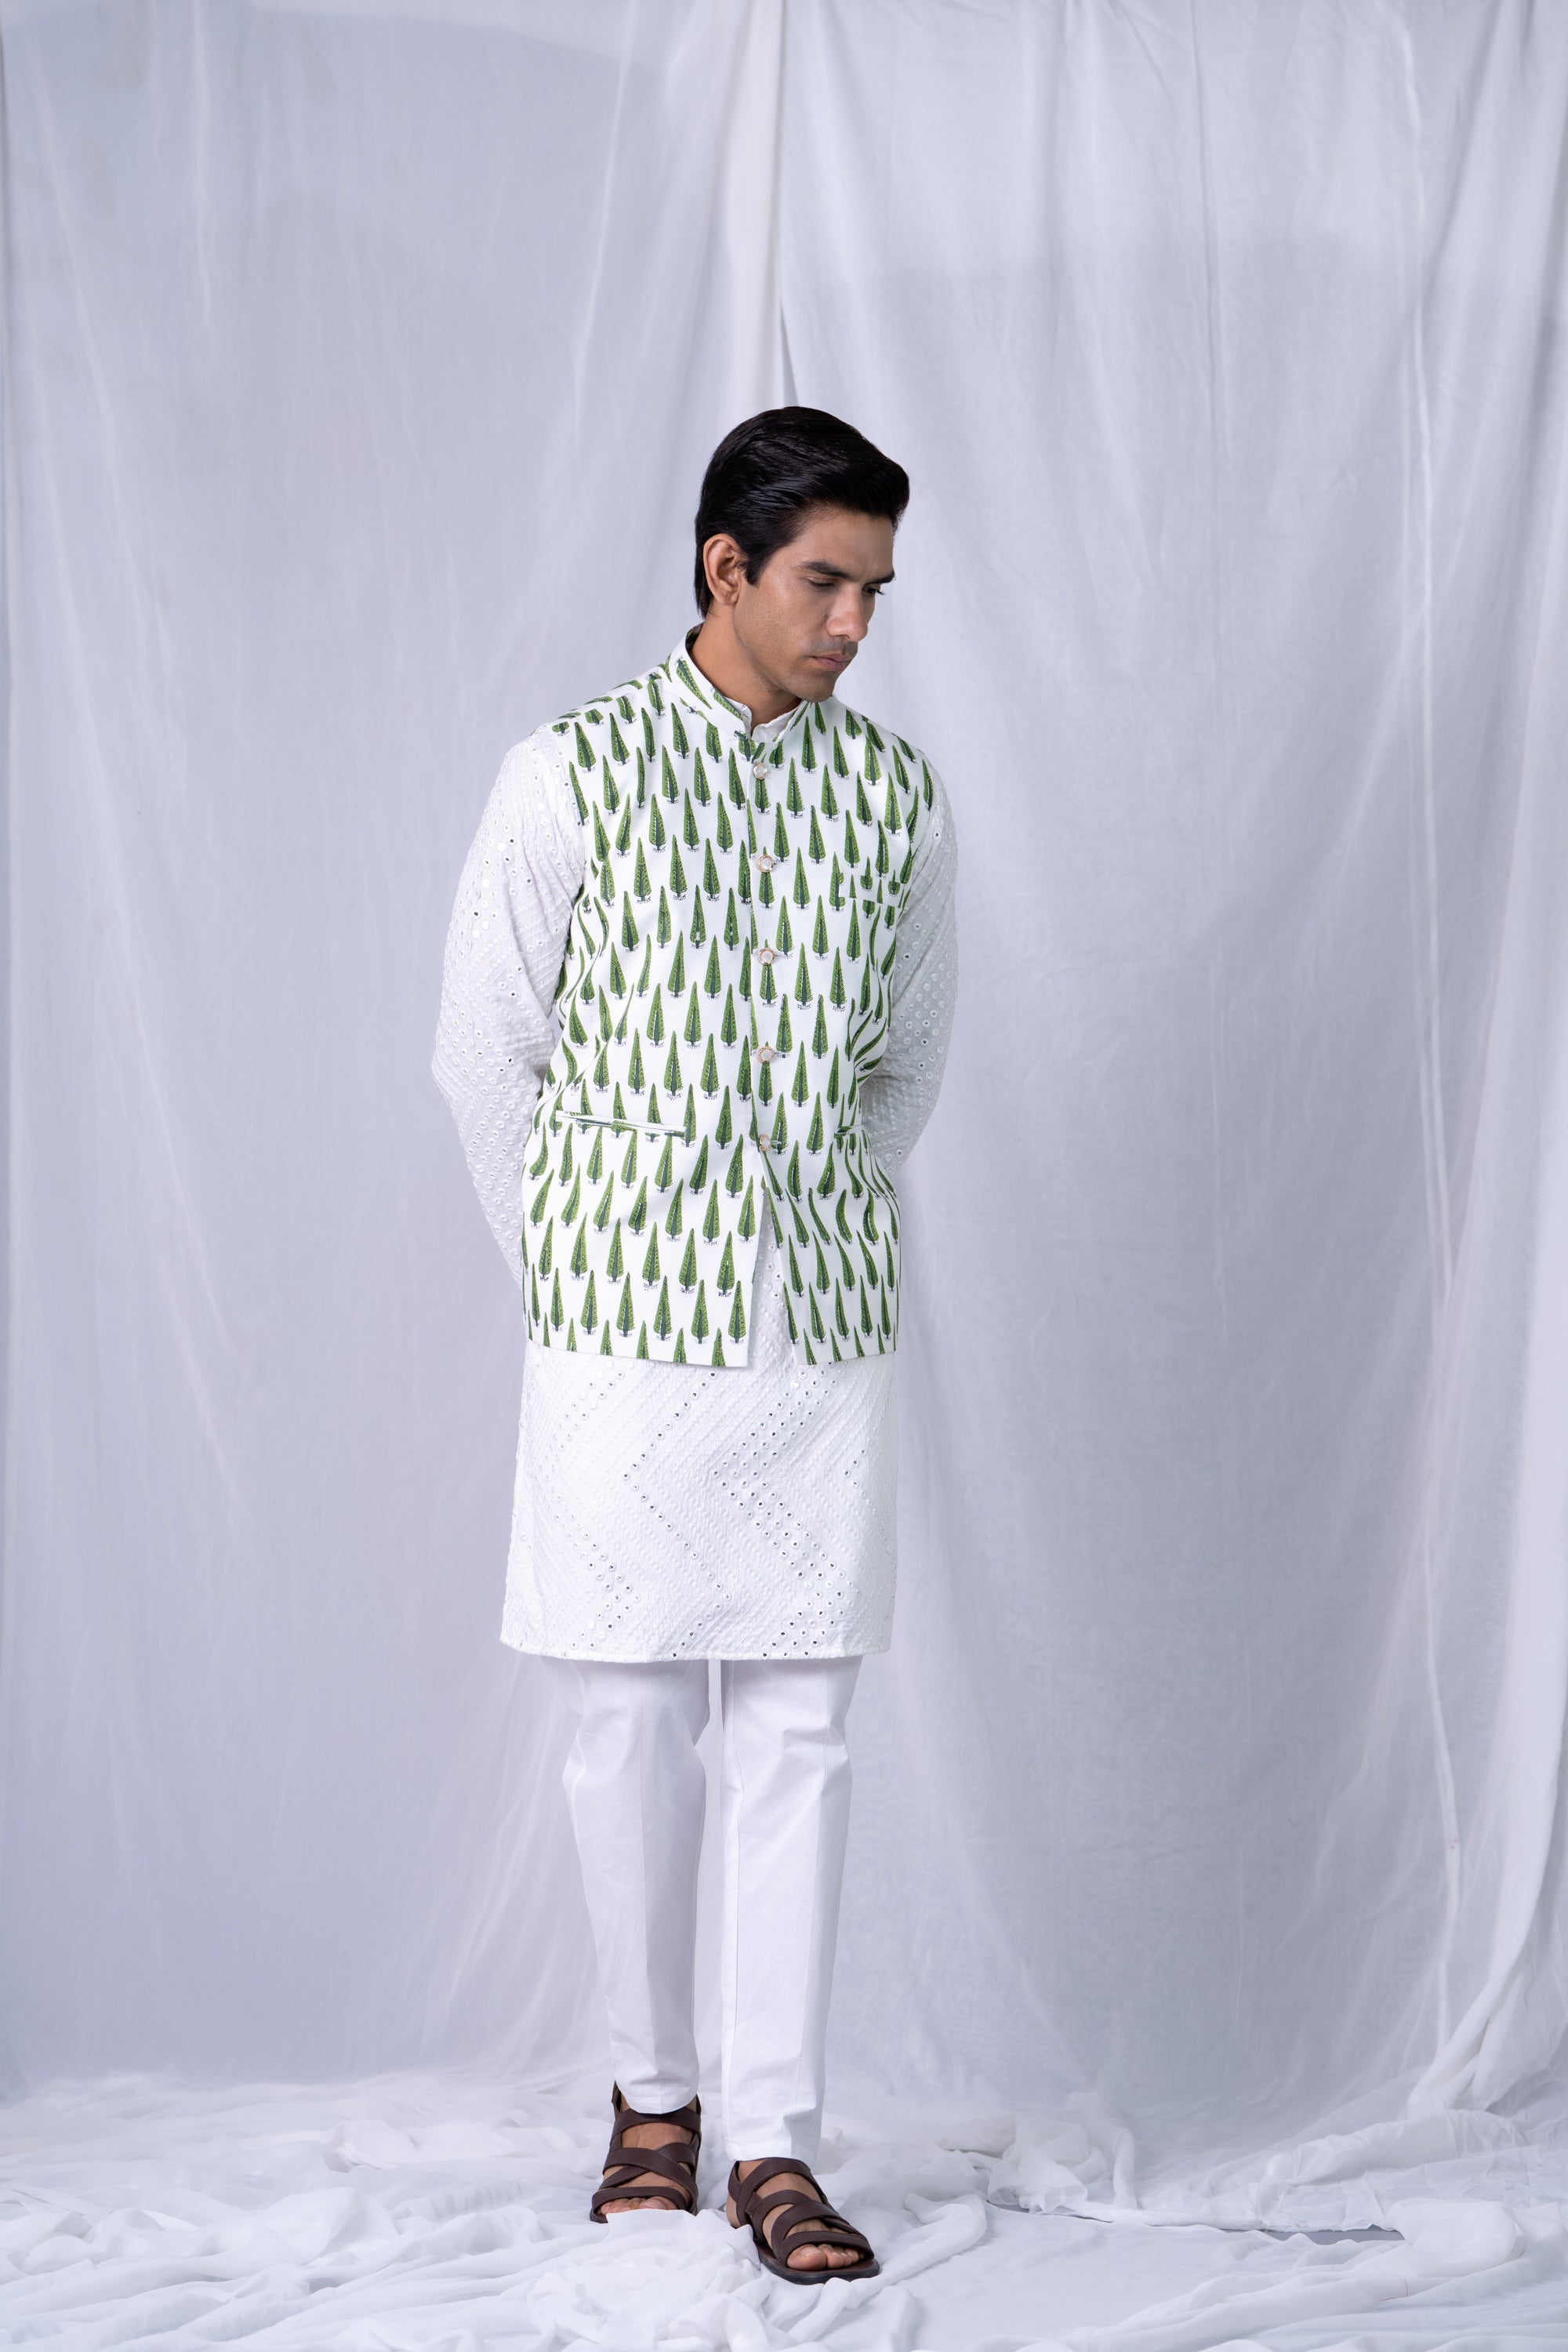 Firangi Yarn Cotton Block Printed Nehru Jacket Green Pine For Mehendi, Sangeet, Wedding, Diwali and More